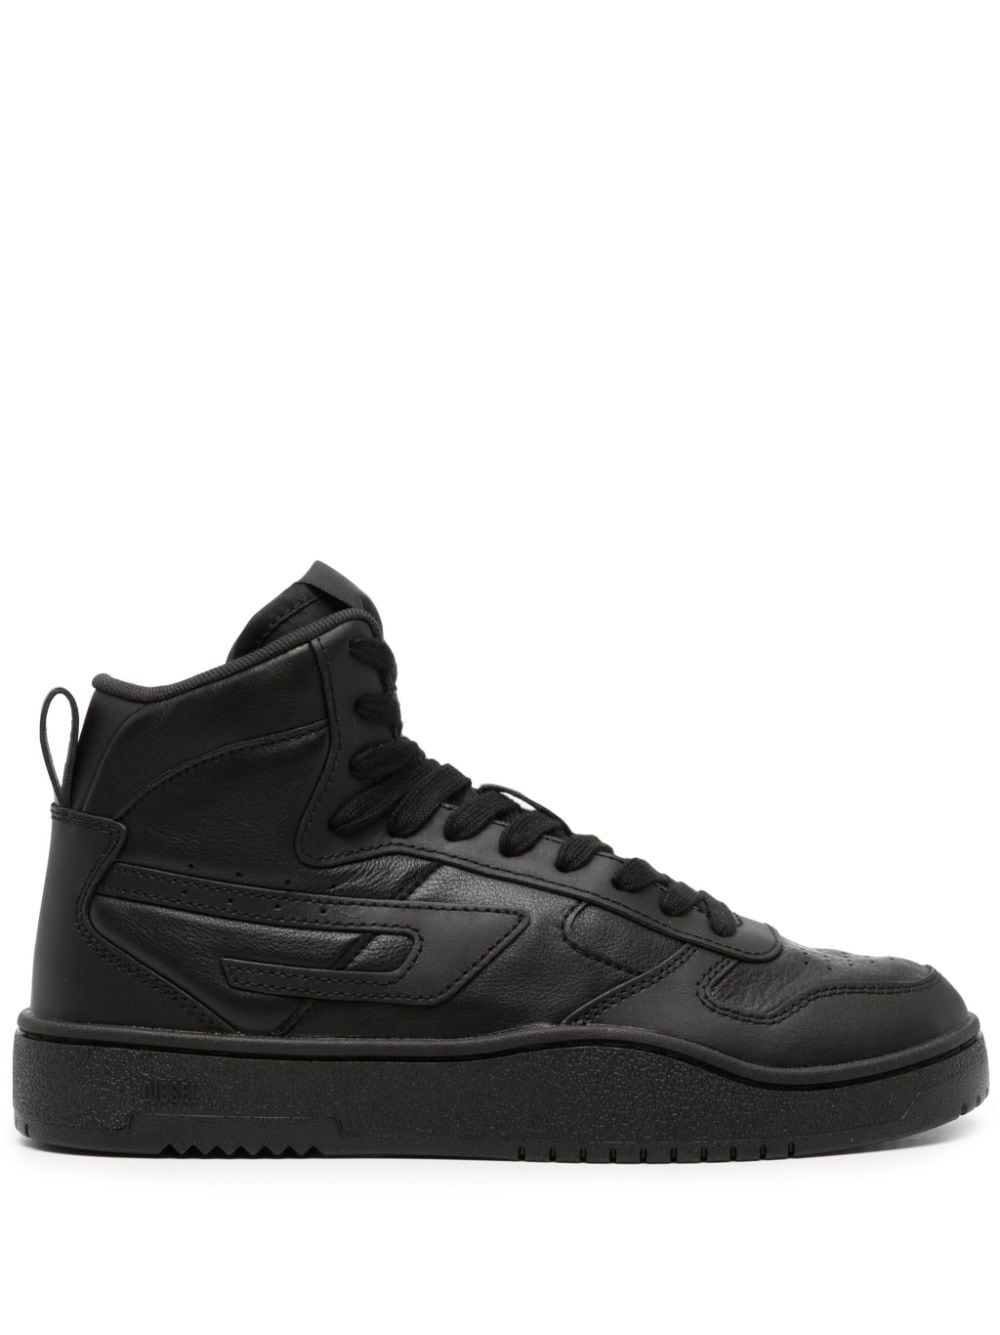 Diesel S-ukiyo V2 High-top Sneakers In Black